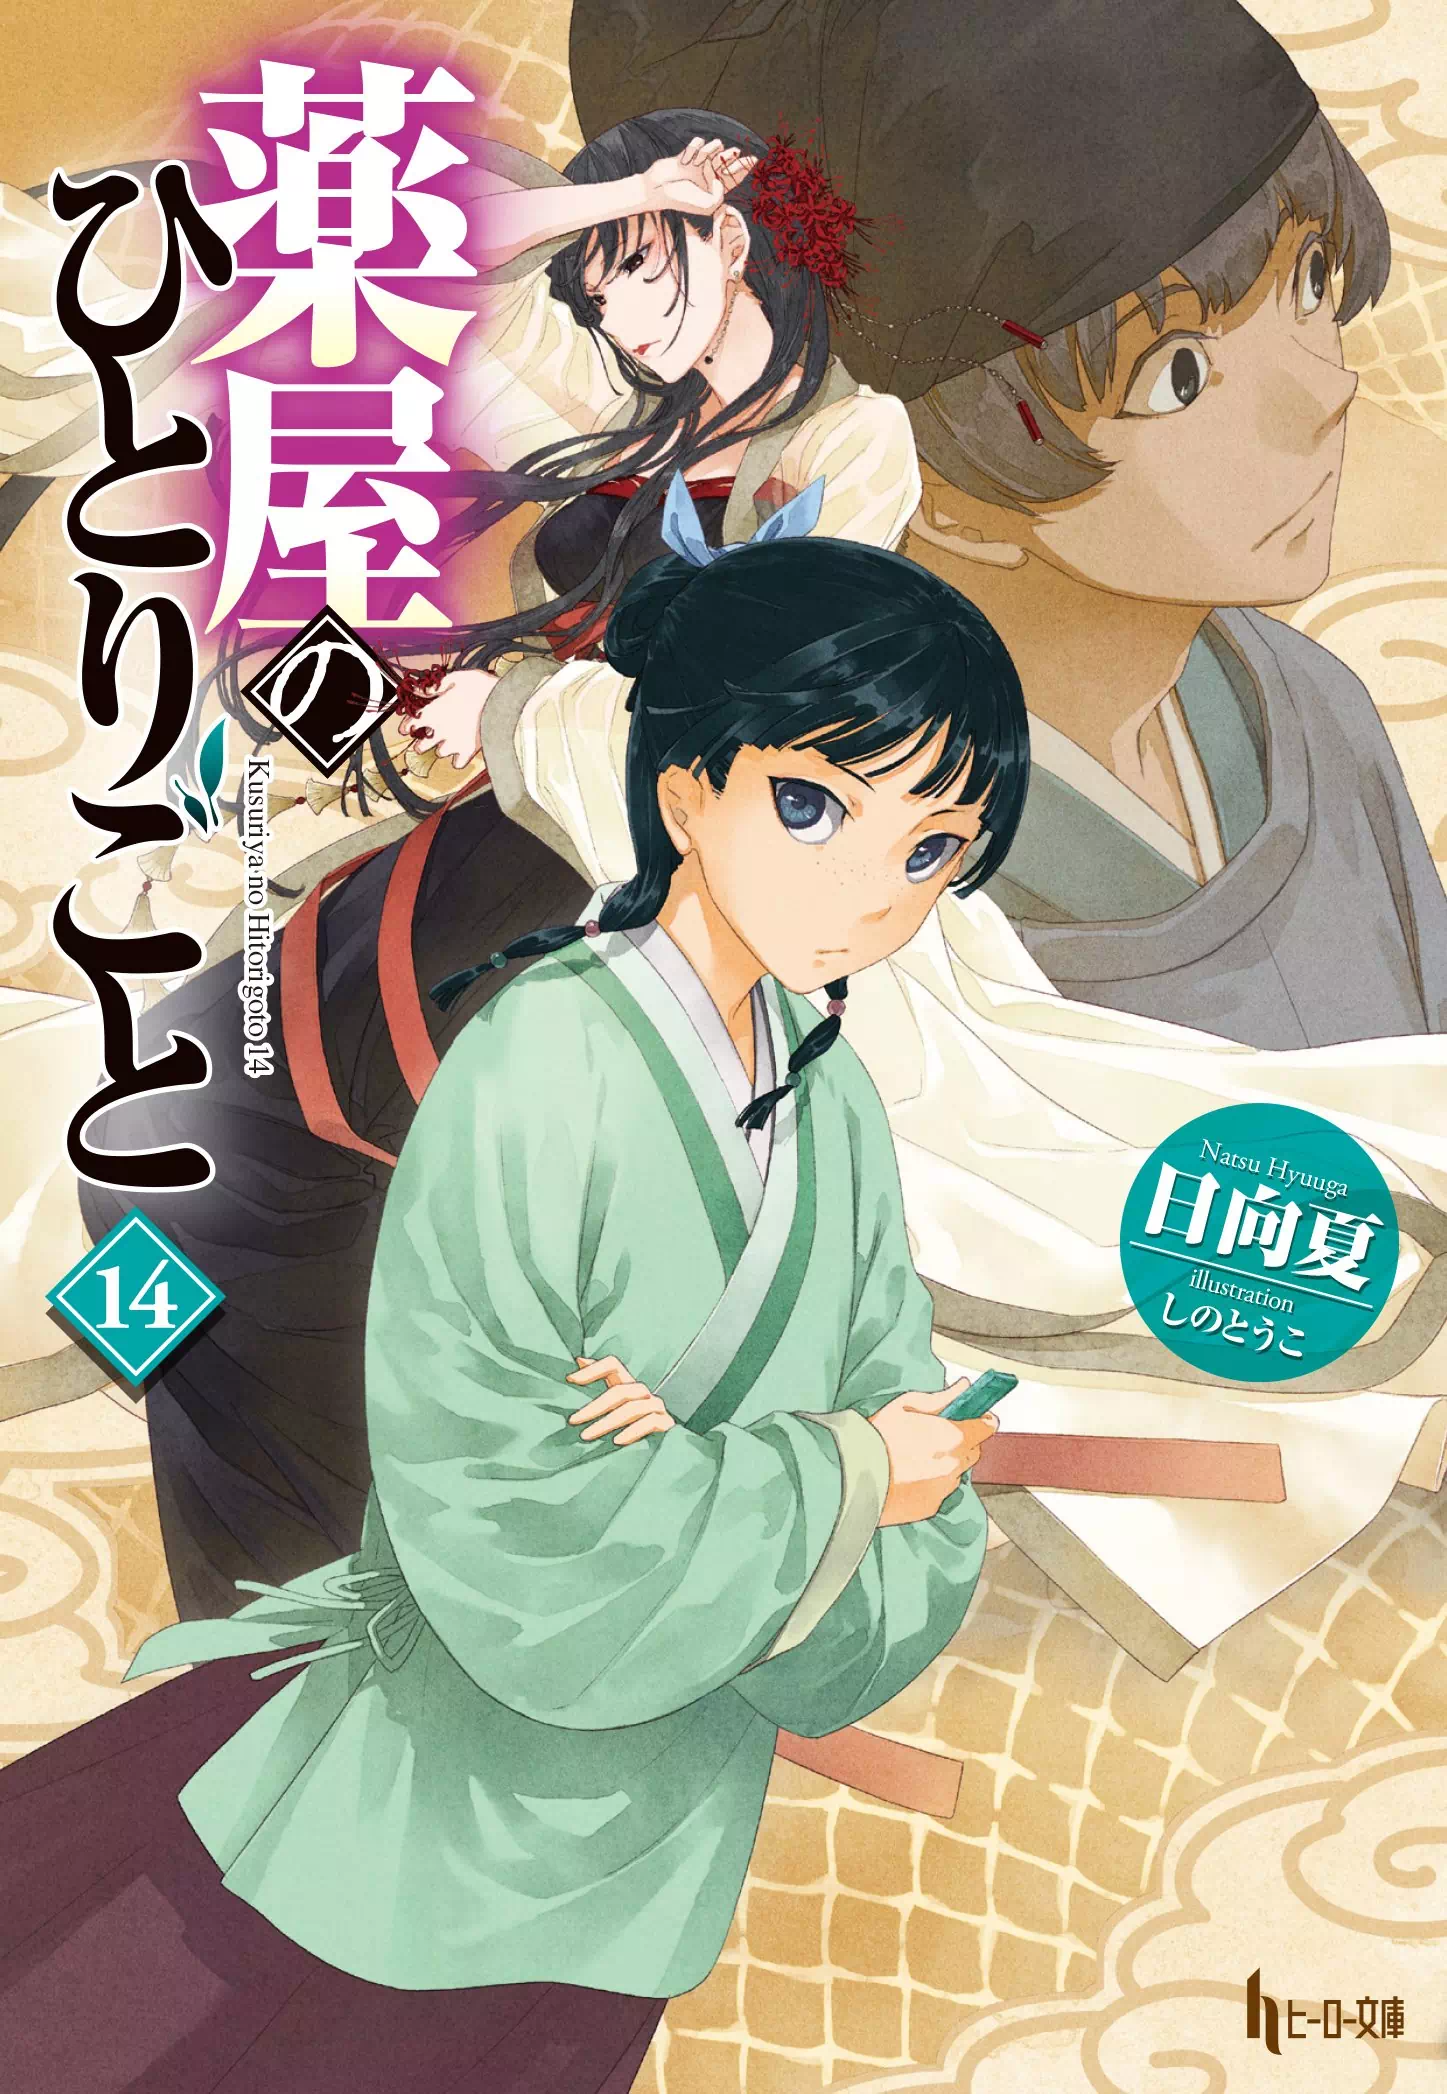 Kusuriya no hitorigoto volume 14 - ventes de Kusuriya no hitorigoto